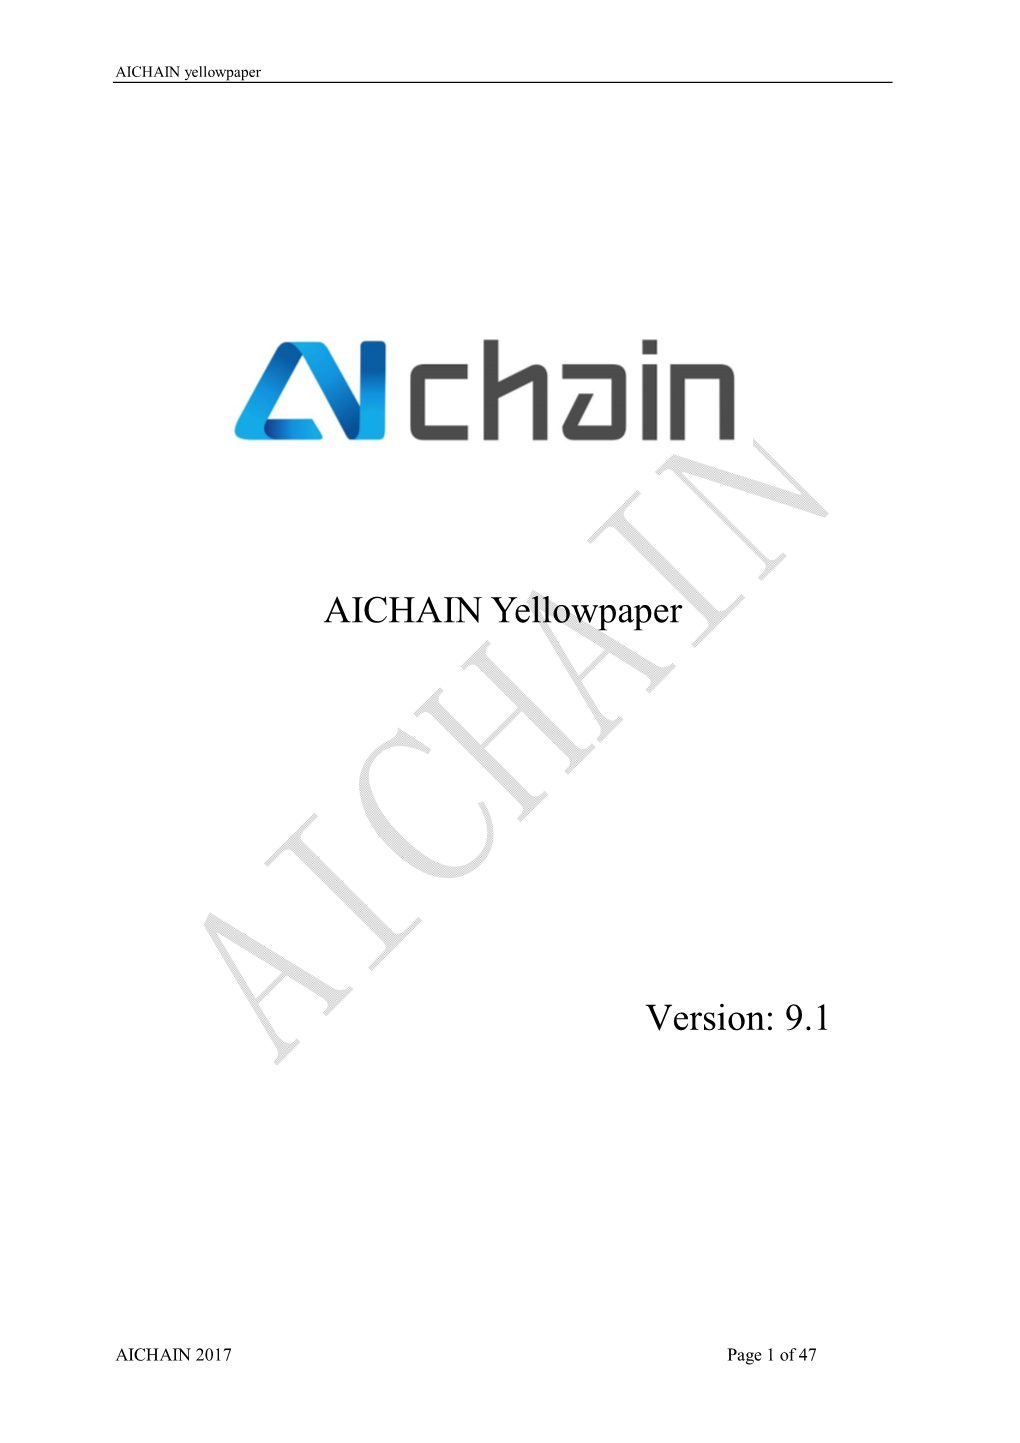 AICHAIN Yellowpaper Version